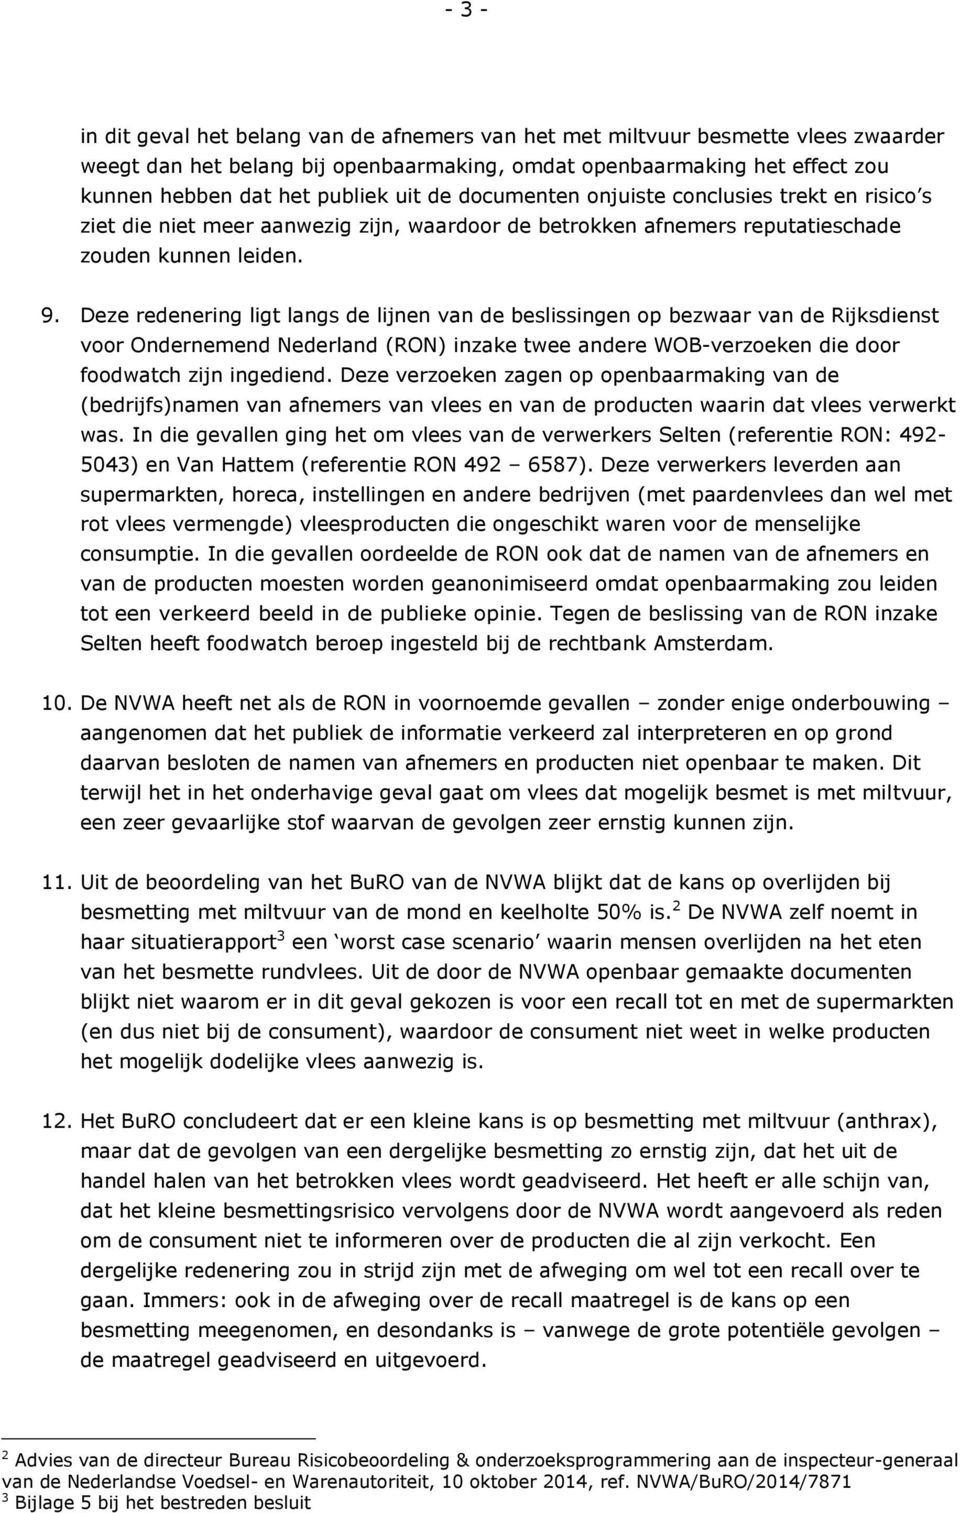 Deze redenering ligt langs de lijnen van de beslissingen op bezwaar van de Rijksdienst voor Ondernemend Nederland (RON) inzake twee andere WOB-verzoeken die door foodwatch zijn ingediend.